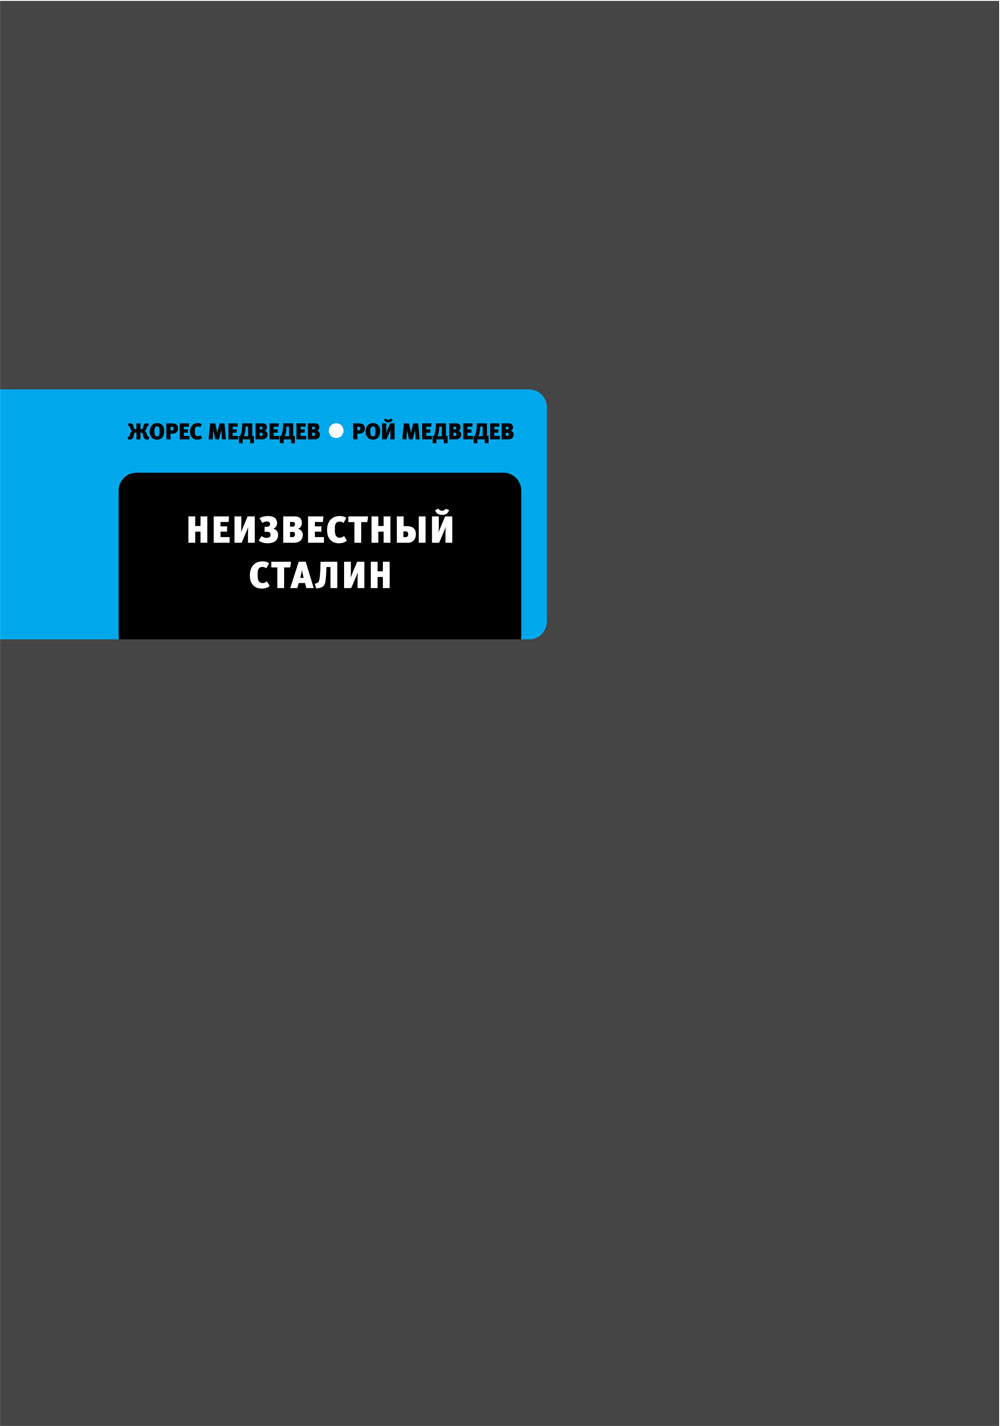 Книга Неизвестный Сталин из серии , созданная Жорес Медведев, Рой Медведев, может относится к жанру Биографии и Мемуары, История, Политика, политология. Стоимость электронной книги Неизвестный Сталин с идентификатором 4955129 составляет 219.00 руб.